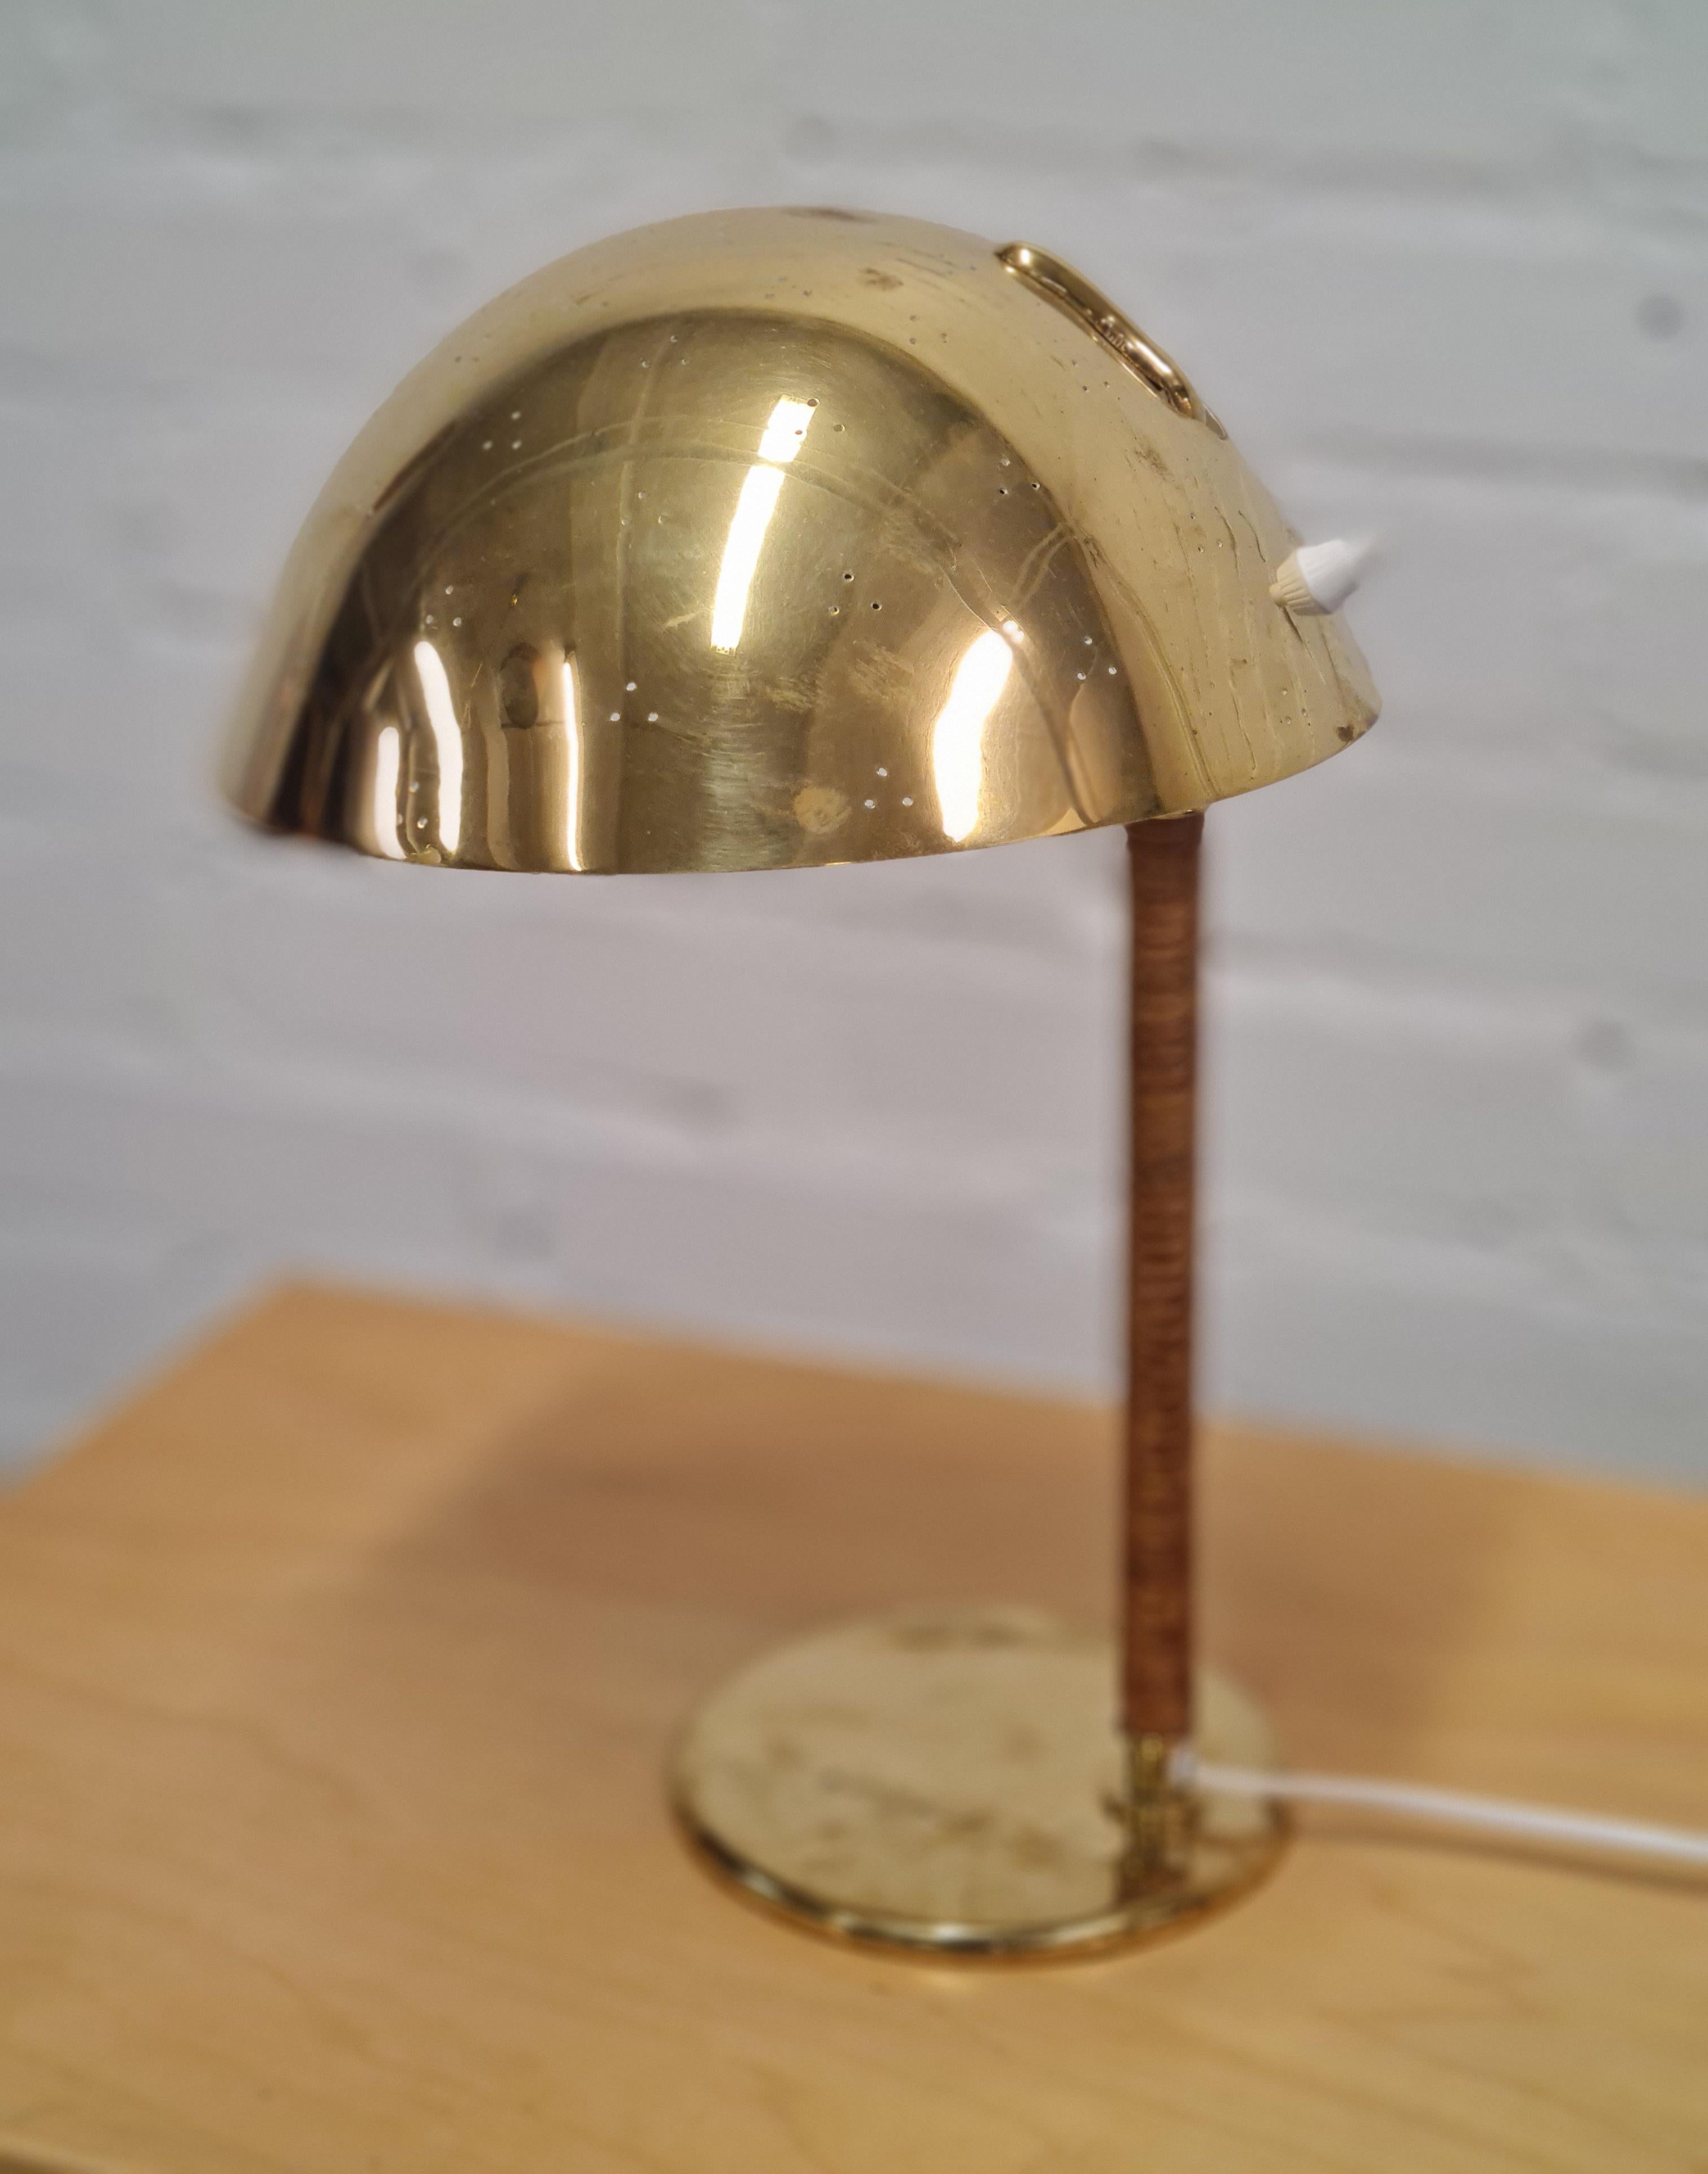 Eines der bekanntesten Designs der Tynell-Tischleuchte. Diese große und elegante Tischleuchte mit dem Spitznamen `Helmet' oder `Kypärä' auf Finnisch gehört zu den begehrtesten Lampen. 
Die Schlichtheit der Lampe hebt sie hervor. 
Diese Lampe ist in